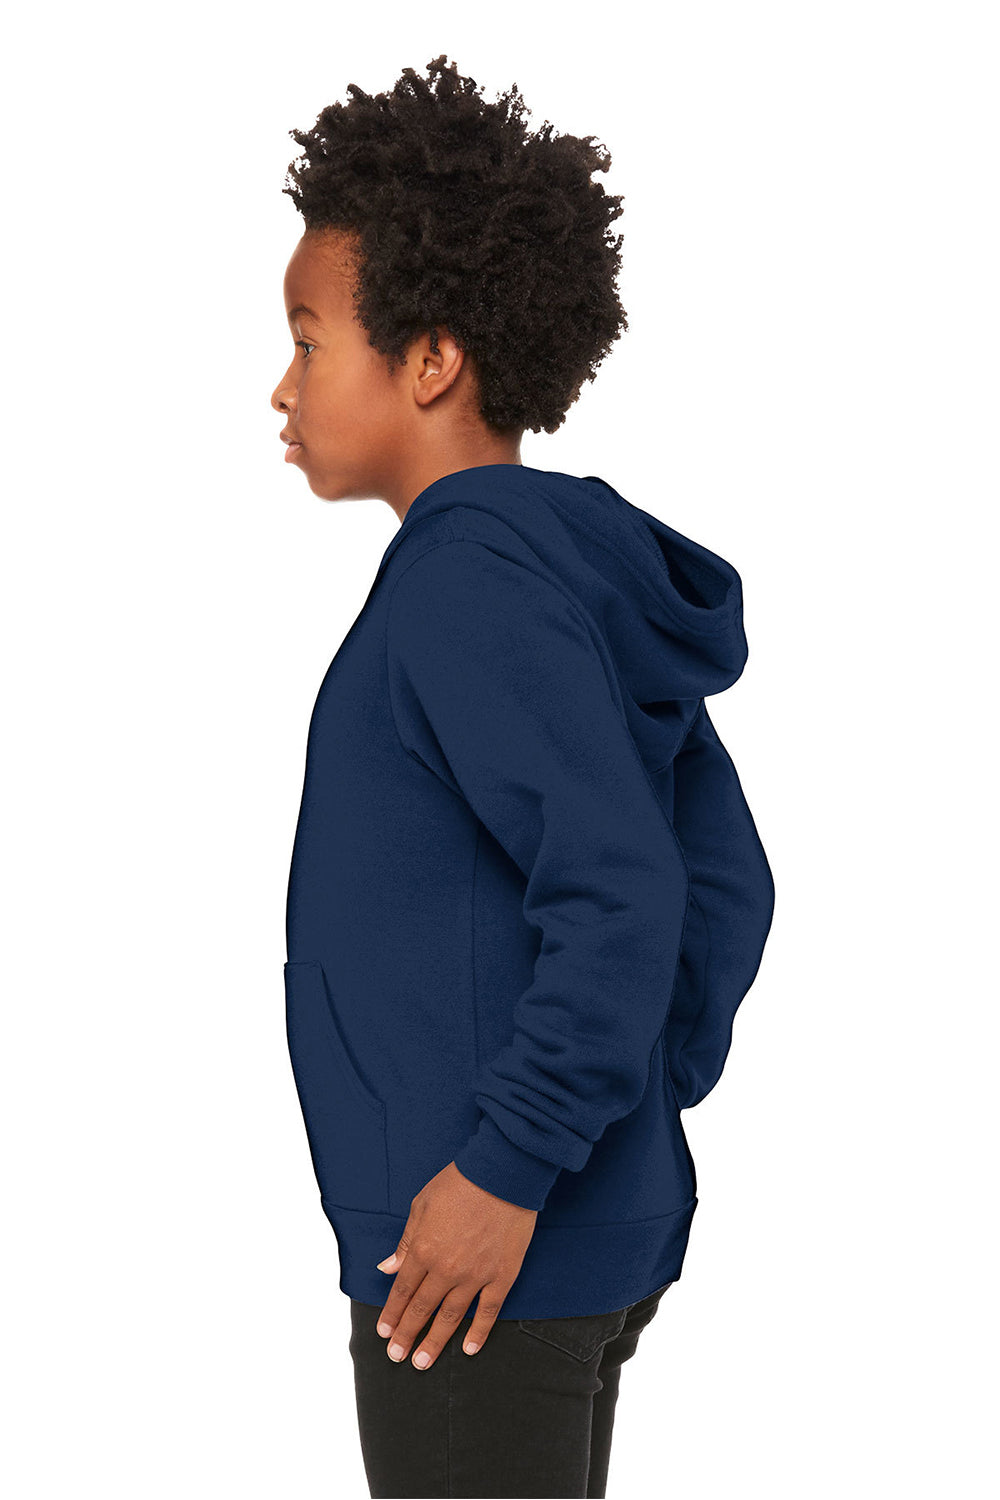 Bella + Canvas 3719Y/BC3719Y Youth Sponge Fleece Hooded Sweatshirt Hoodie Navy Blue Model Side